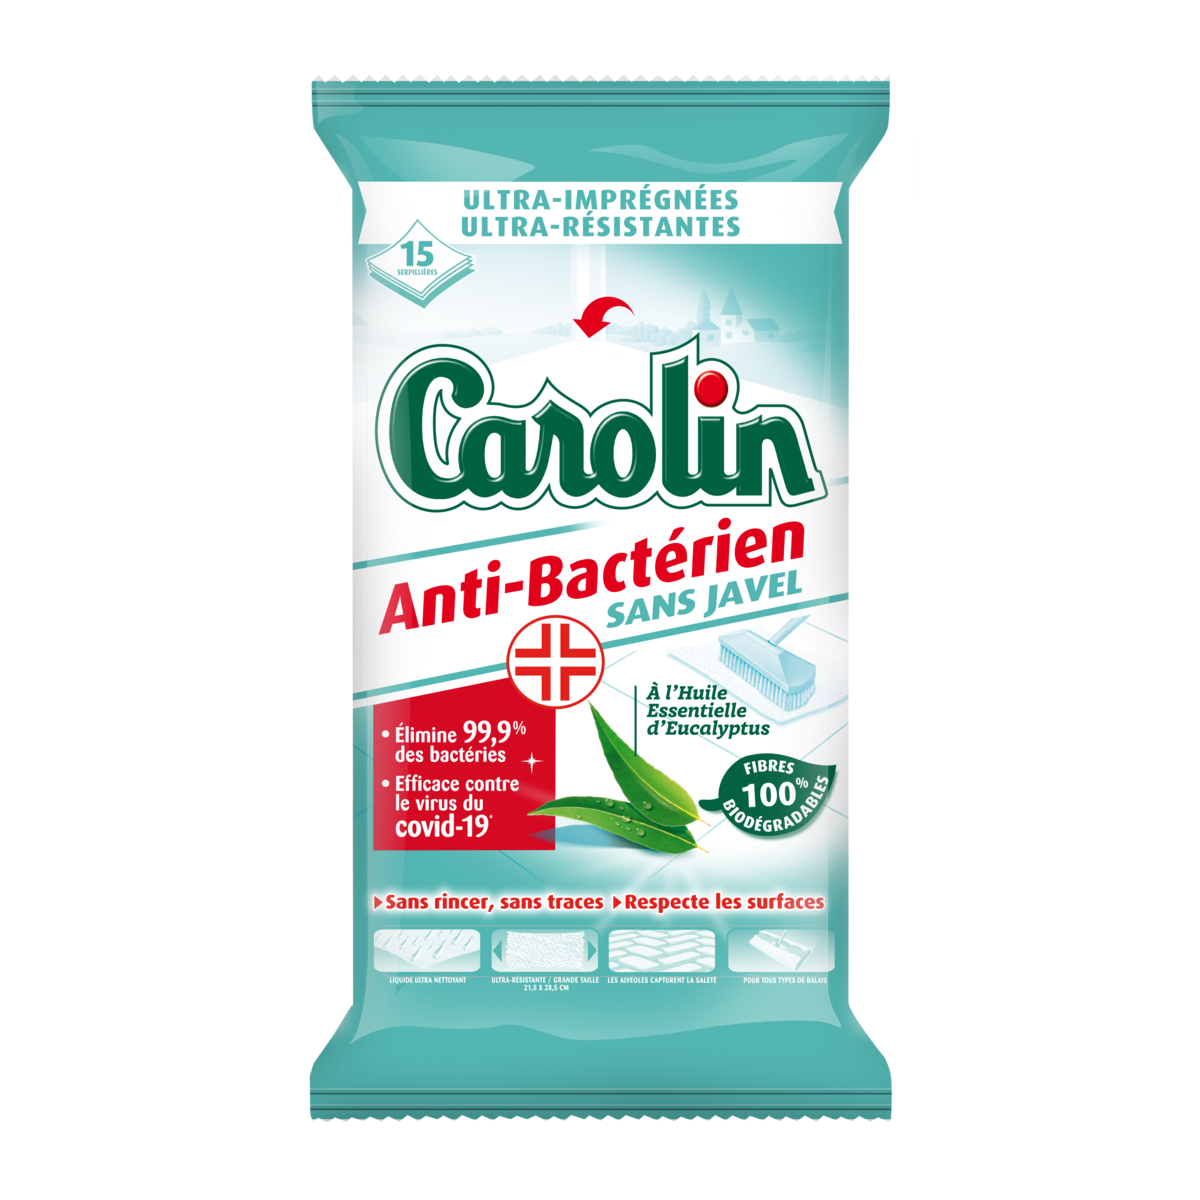 CAROLIN Lingettes anti-bactérienne sans javel à l'eucalyptus 15 lingettes  pas cher 